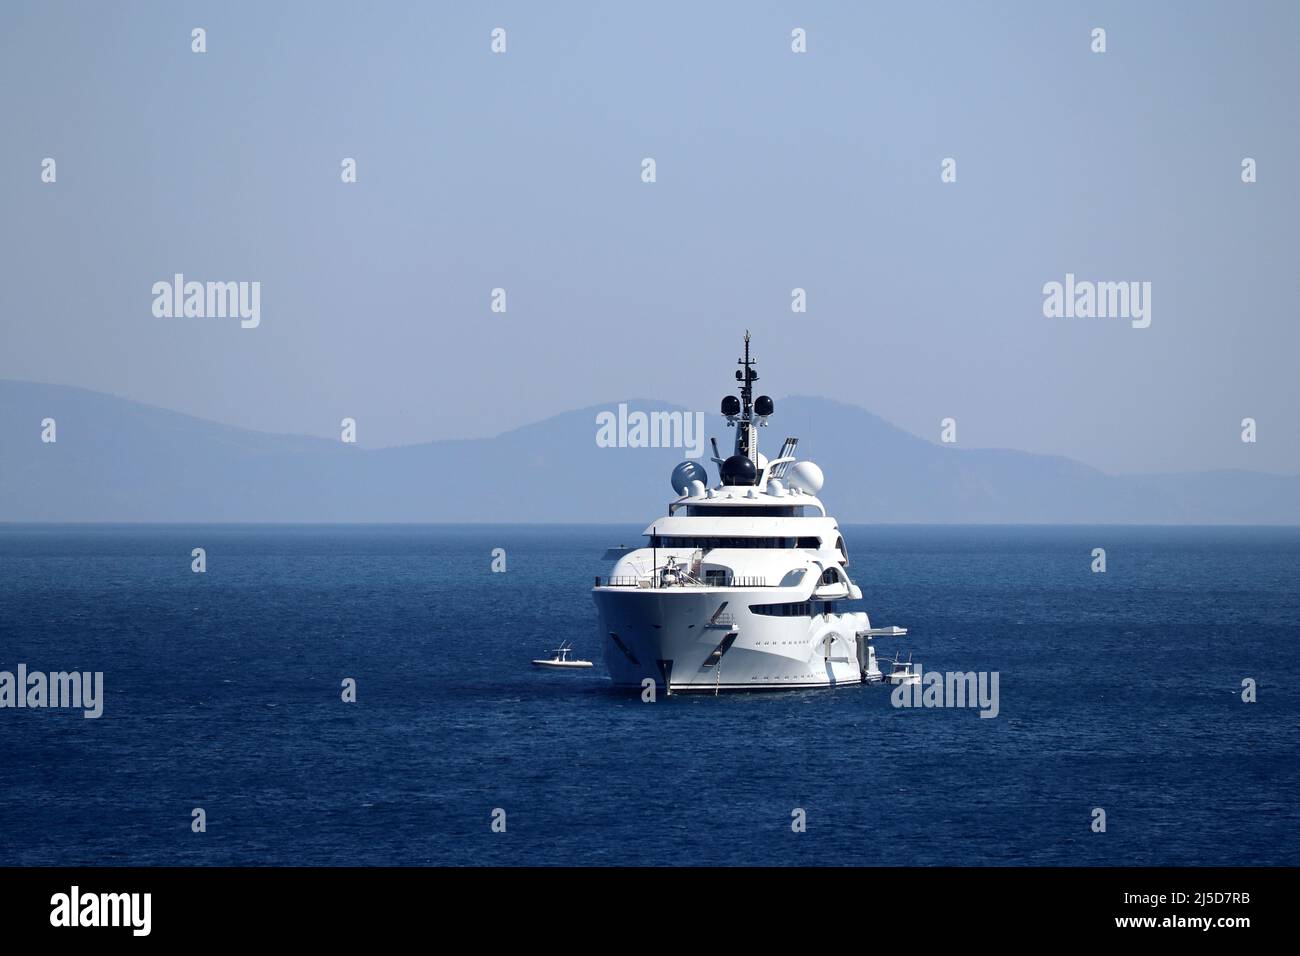 Yacht de luxe avec héliport et hélicoptère naviguant dans une mer, vue de face. Bateau blanc sur fond d'île de montagne Banque D'Images